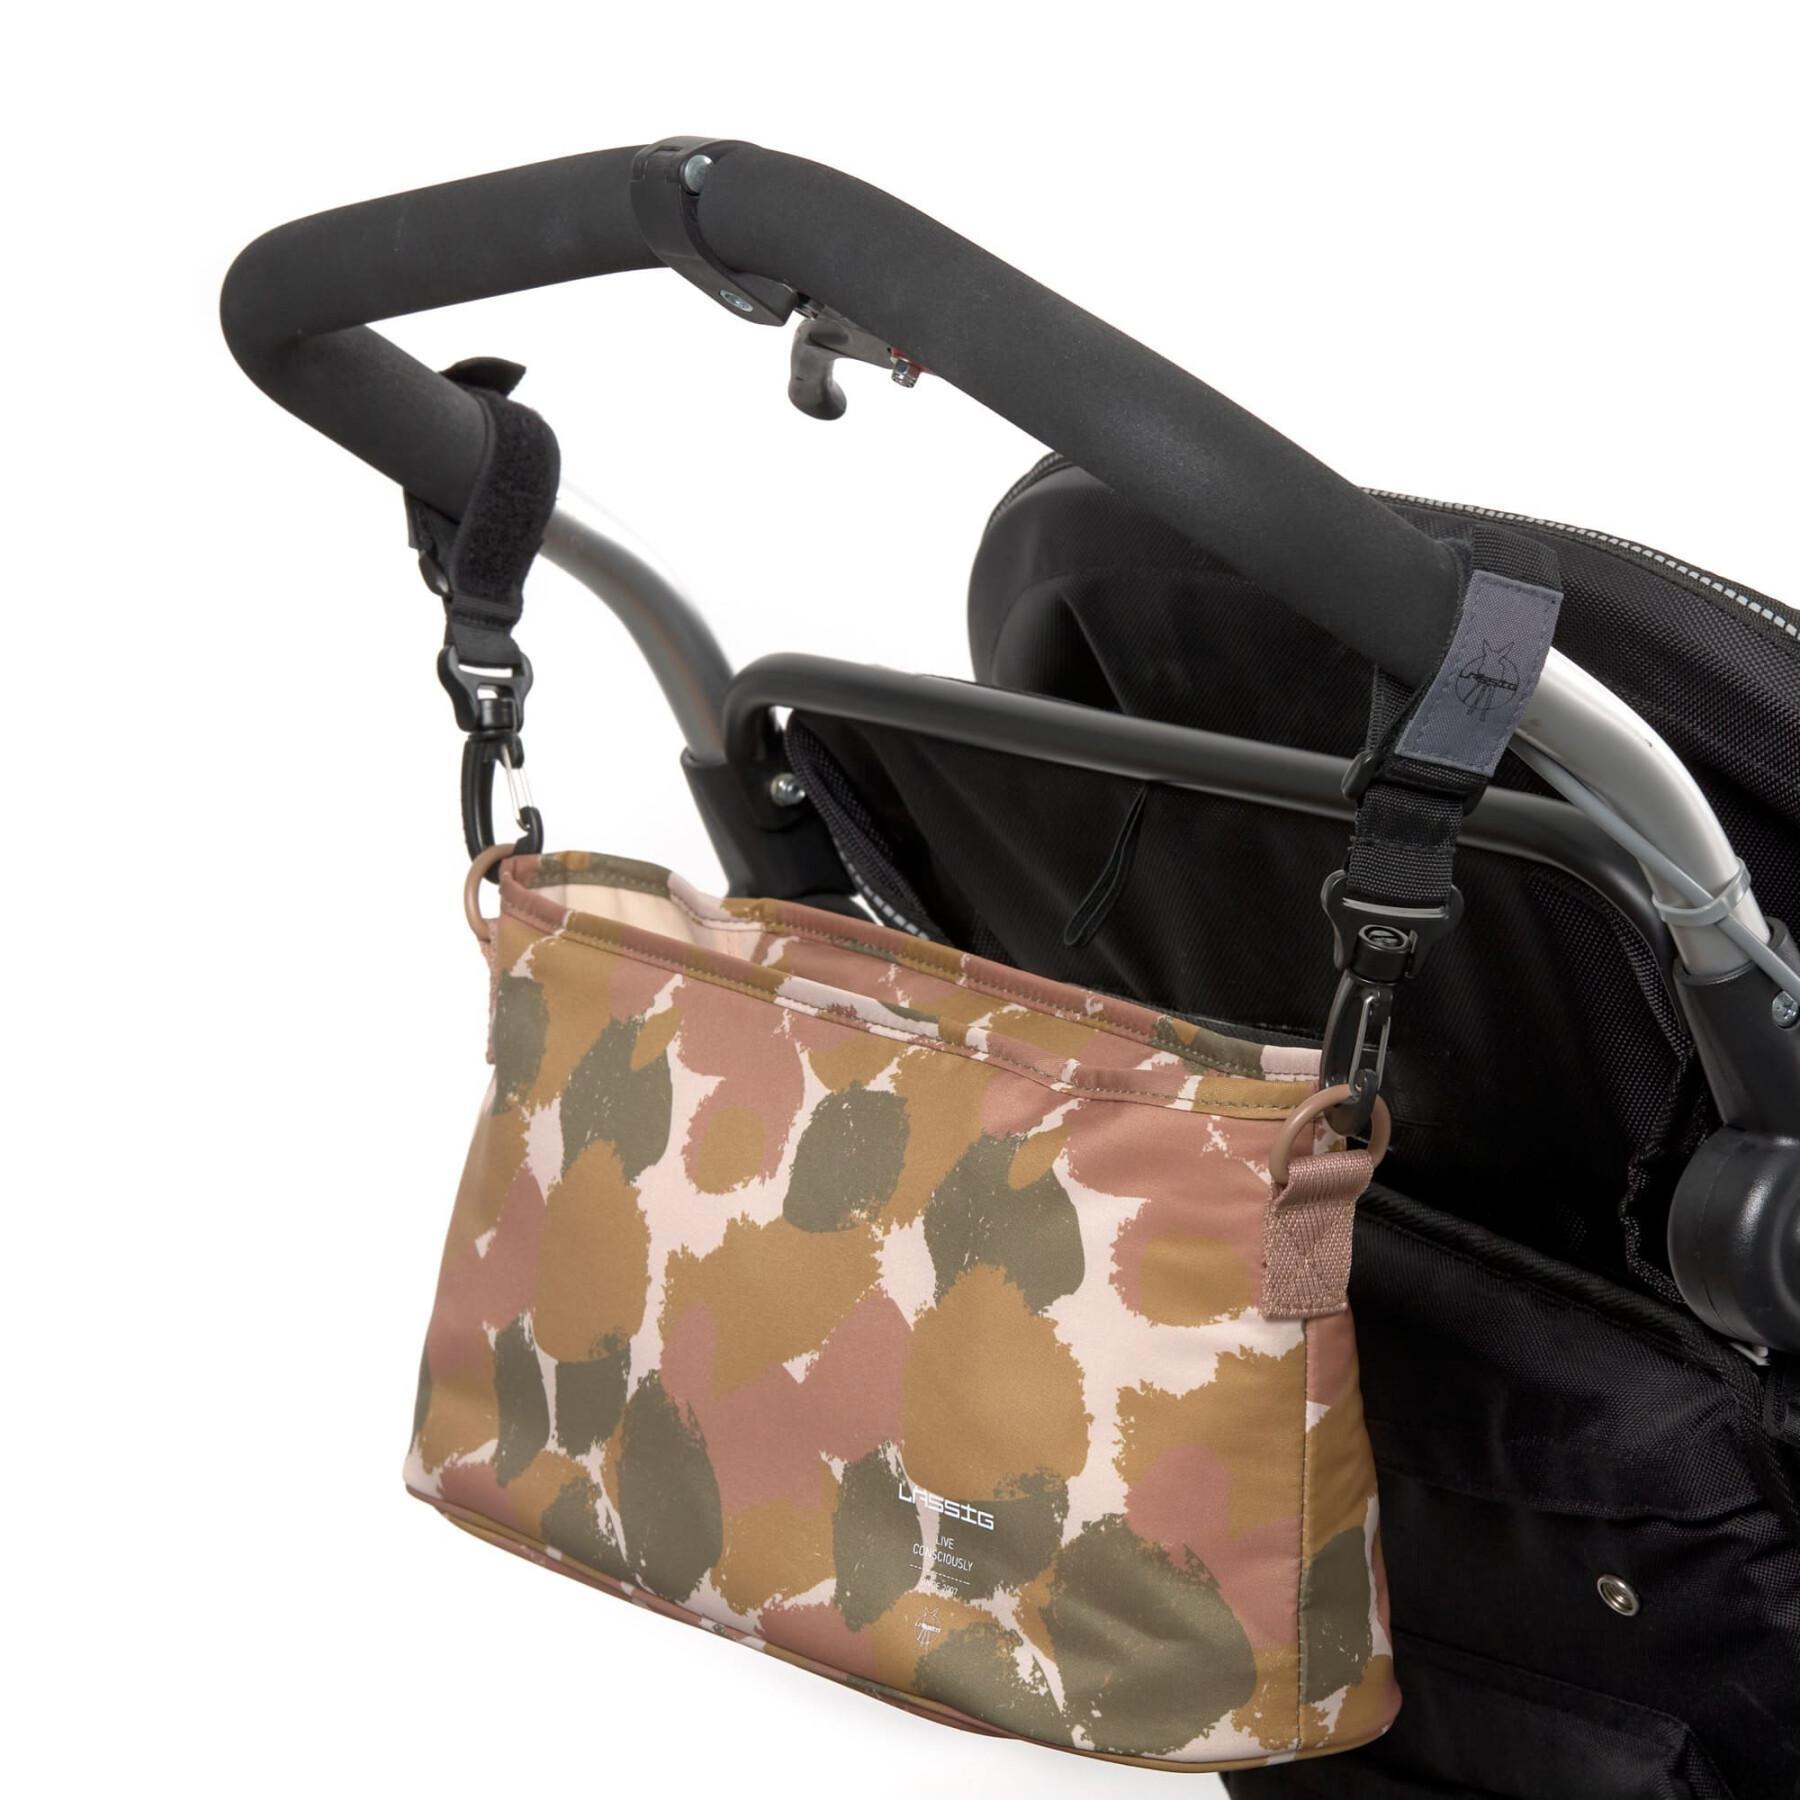 Stroller organizer pocket spots baby Lässig